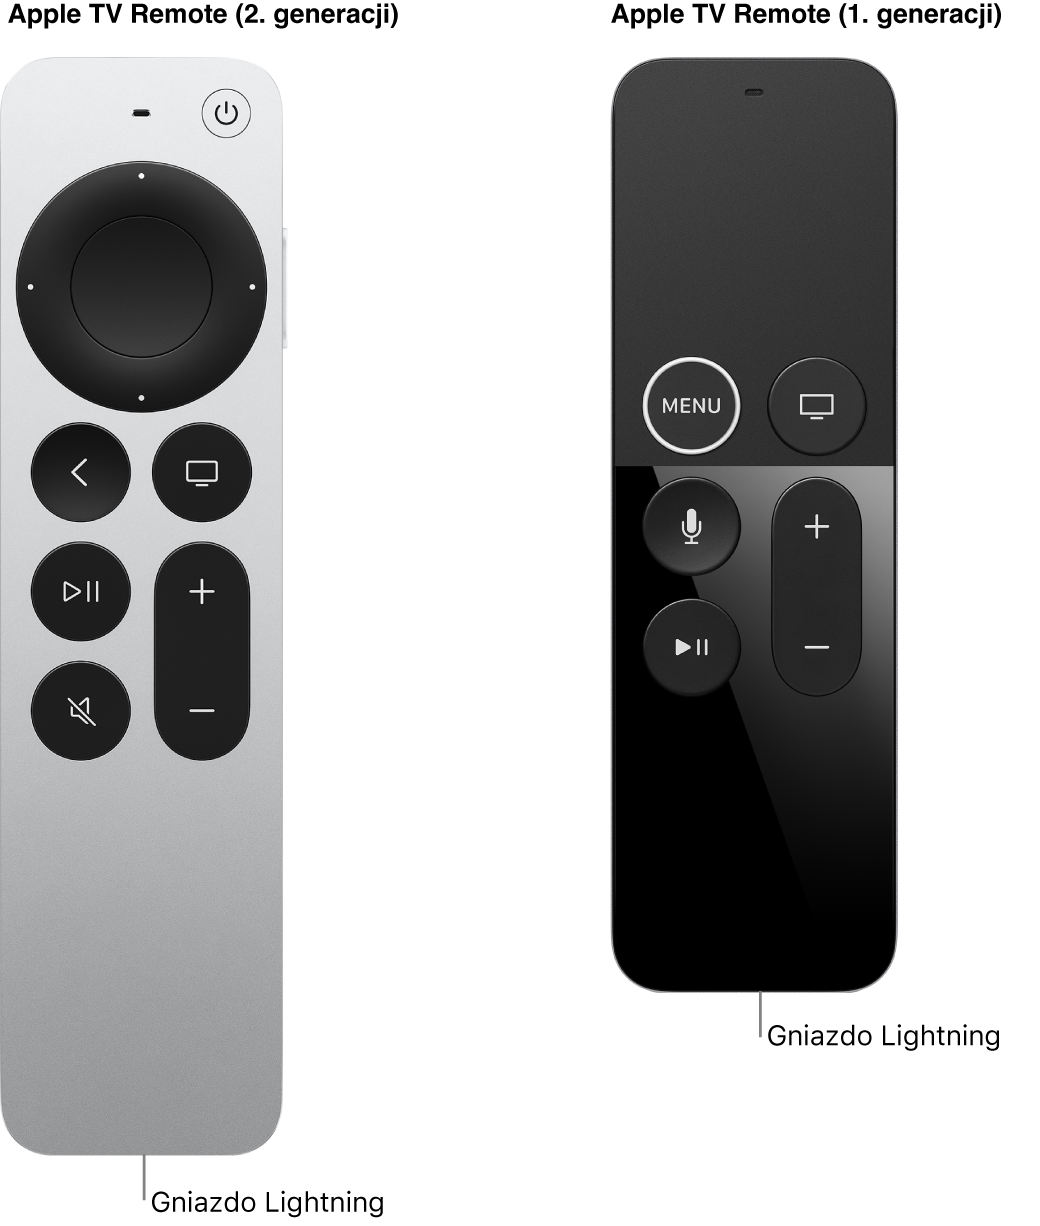 Ilustracja przedstawiająca gniazdo Lightning pilota Apple TV Remote (2. generacji) oraz pilota Apple TV Remote (1. generacji).